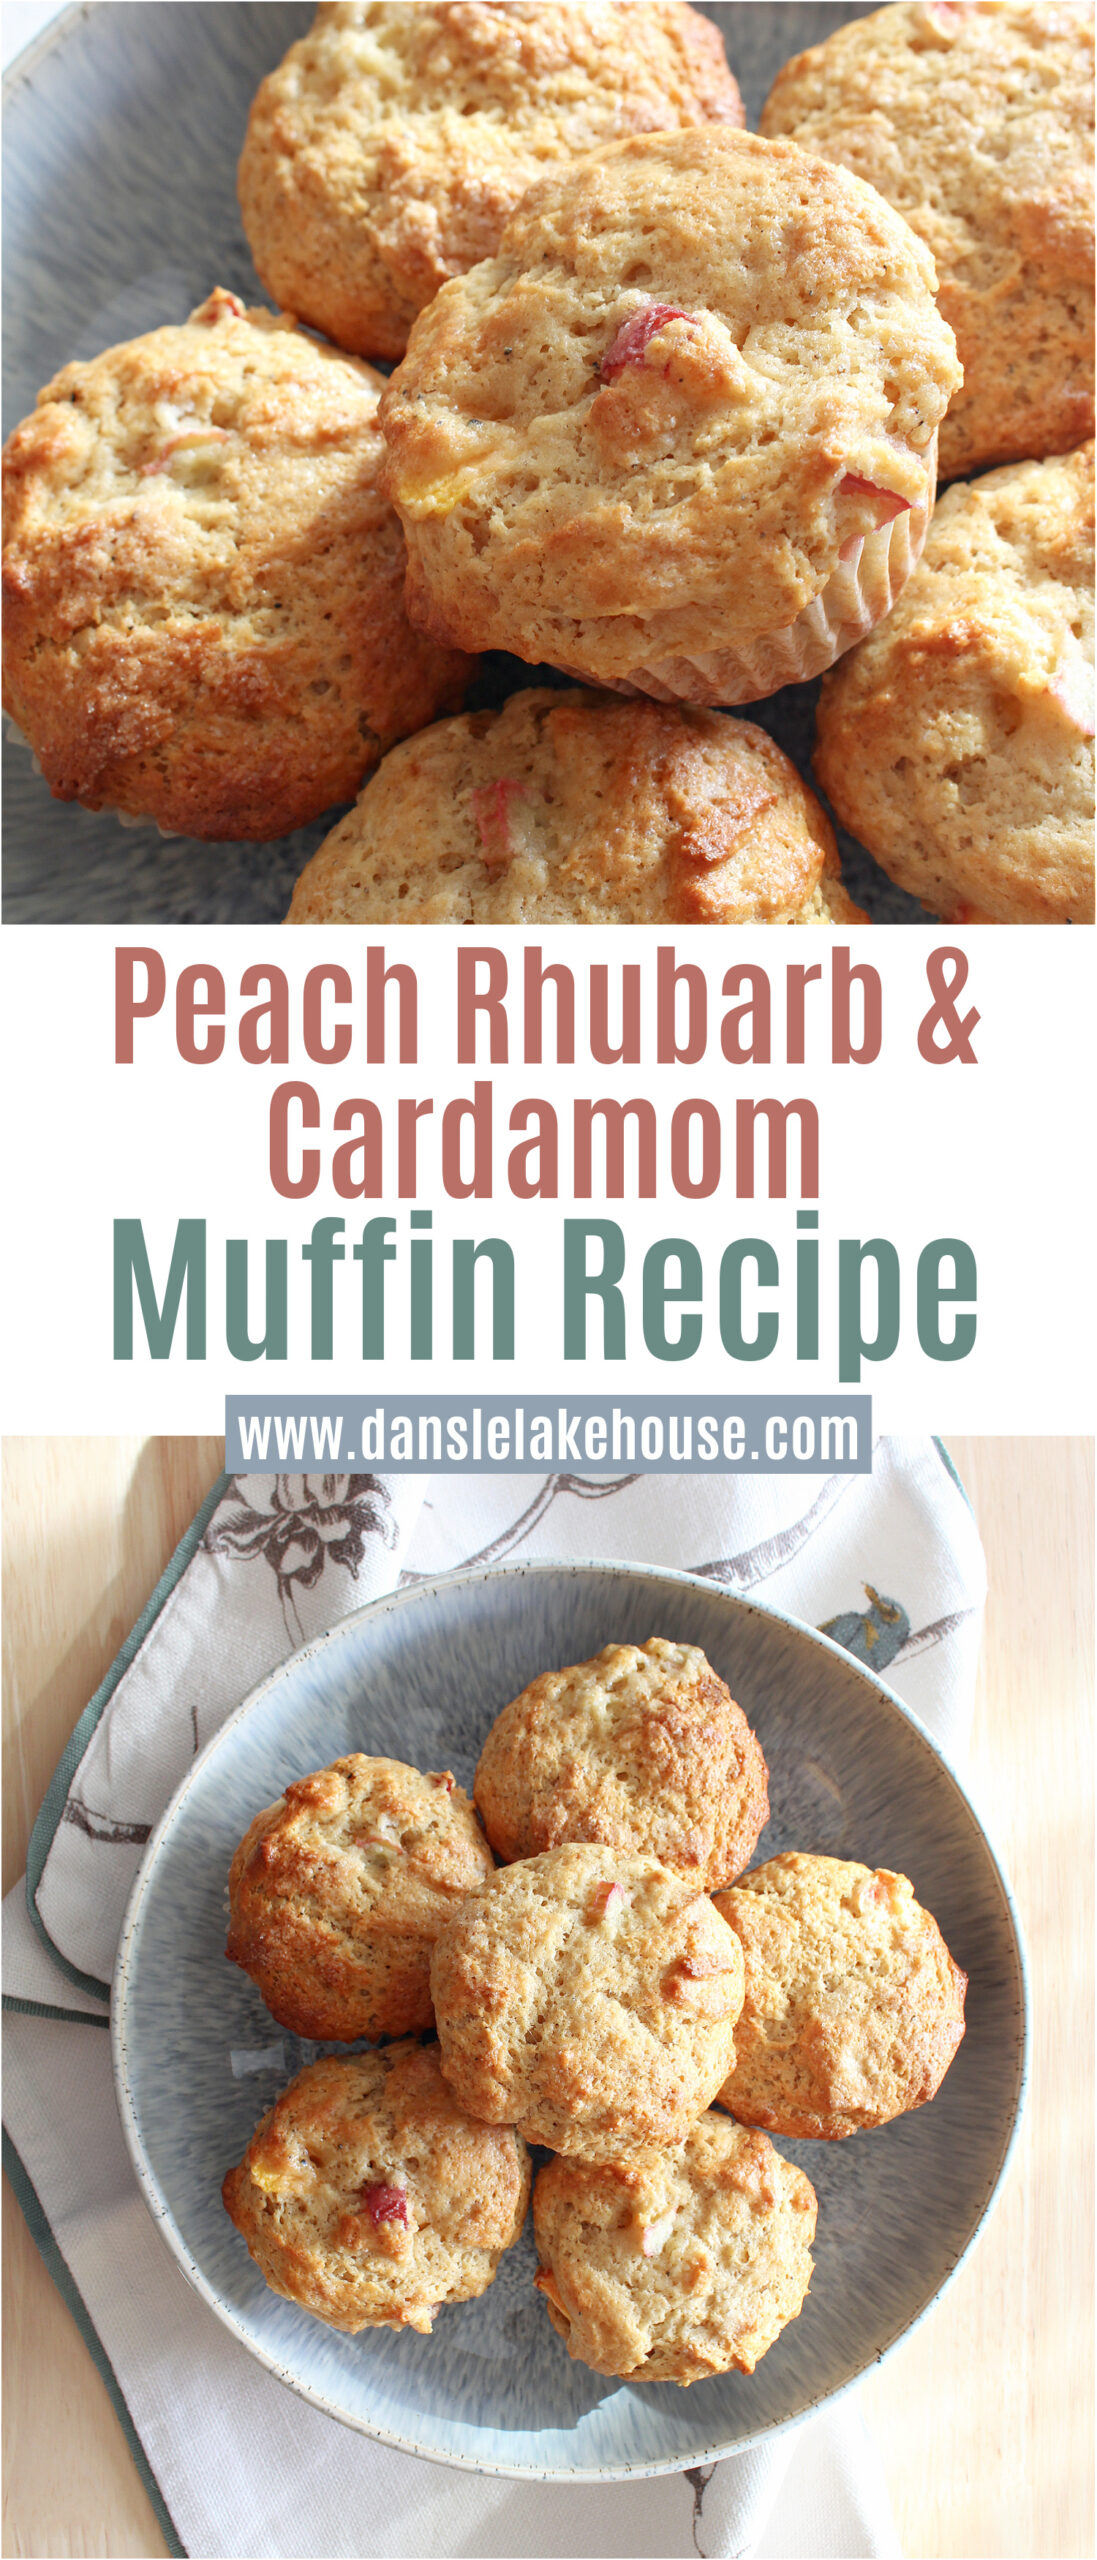 Peach Rhubarb Muffins with Cardamom